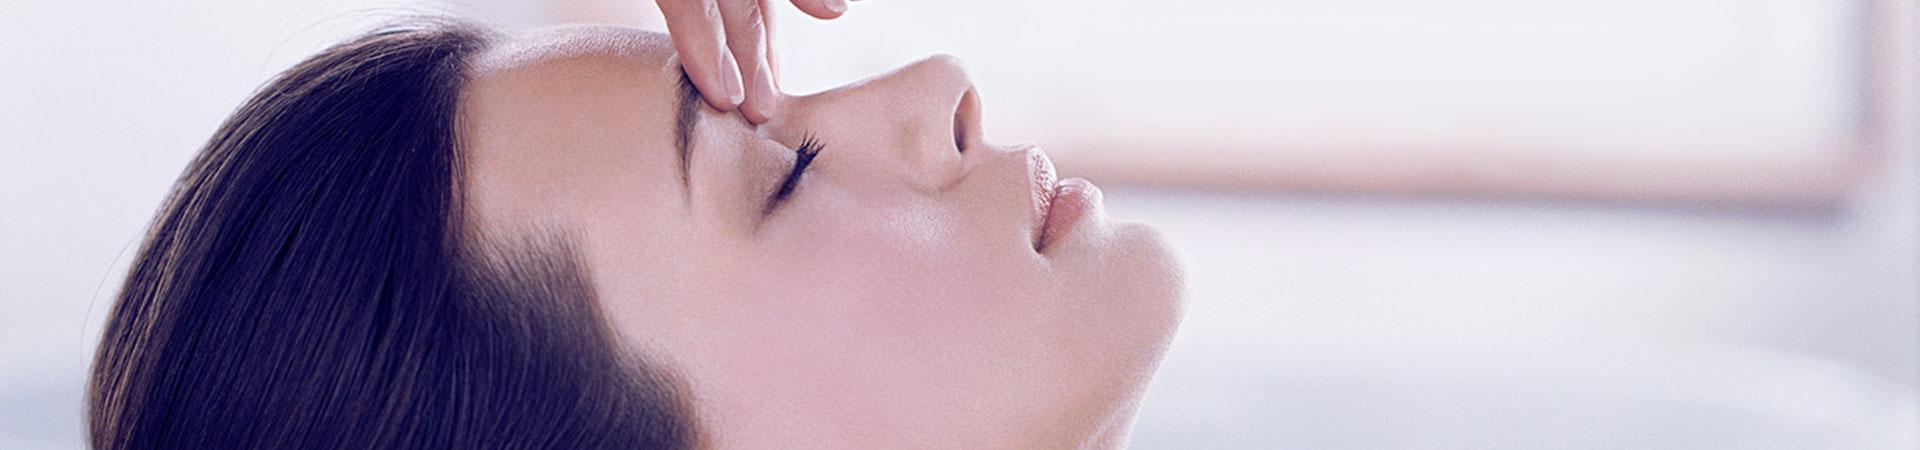 Beauty Treatments - The Skin Clinic